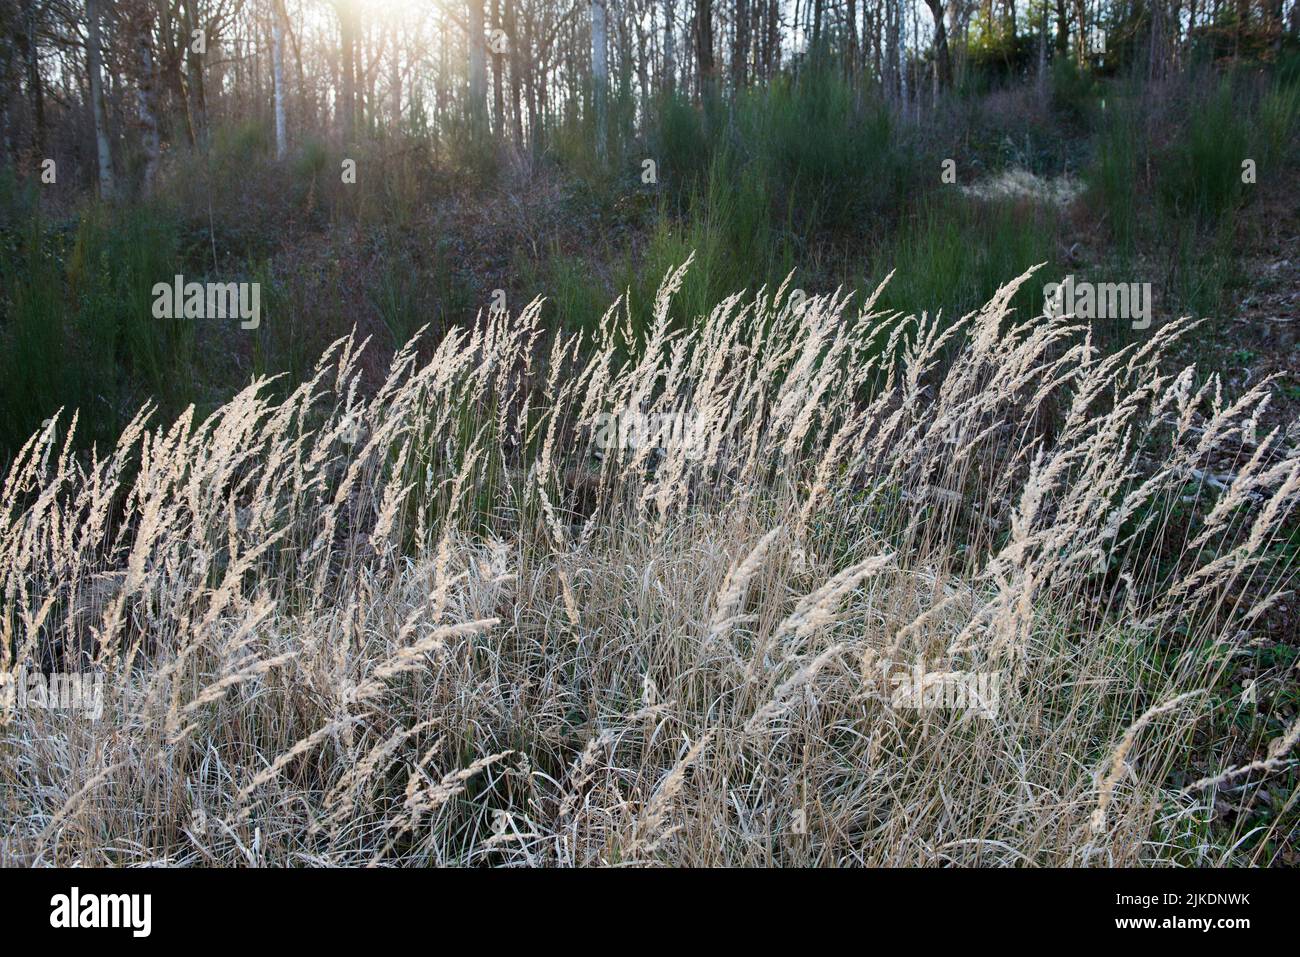 Bosque de caña pequeña o hierba silvestre (Calamagrostis epigejos), Selva de Rambouillet, Parque Natural Regional Haute Vallee de Chevreuse, departamento de Yvelines, Foto de stock